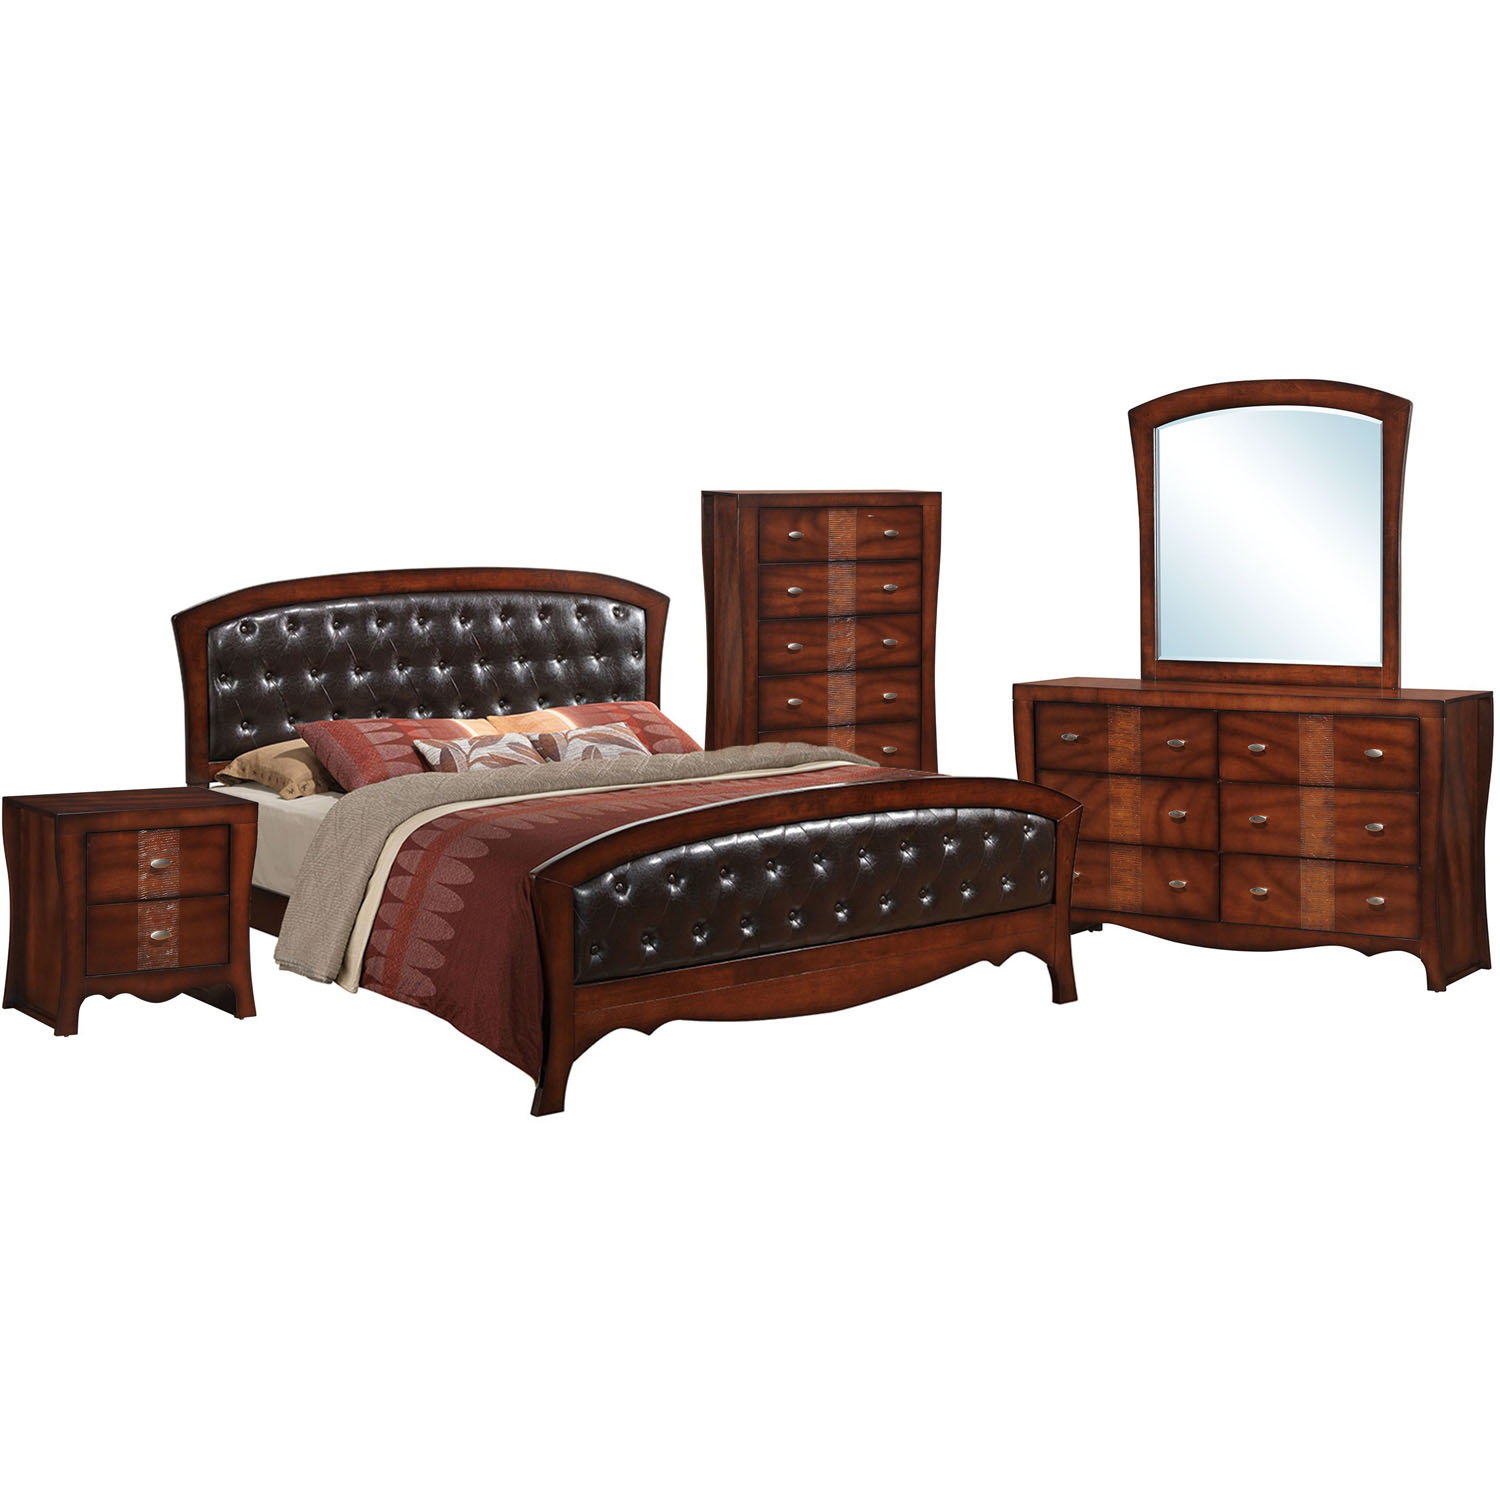 Cambridge Fairmount Five Piece Bedroom Suite: Queen Bed, Dresser, Mirror, Chest, Nightstand - image 1 of 2